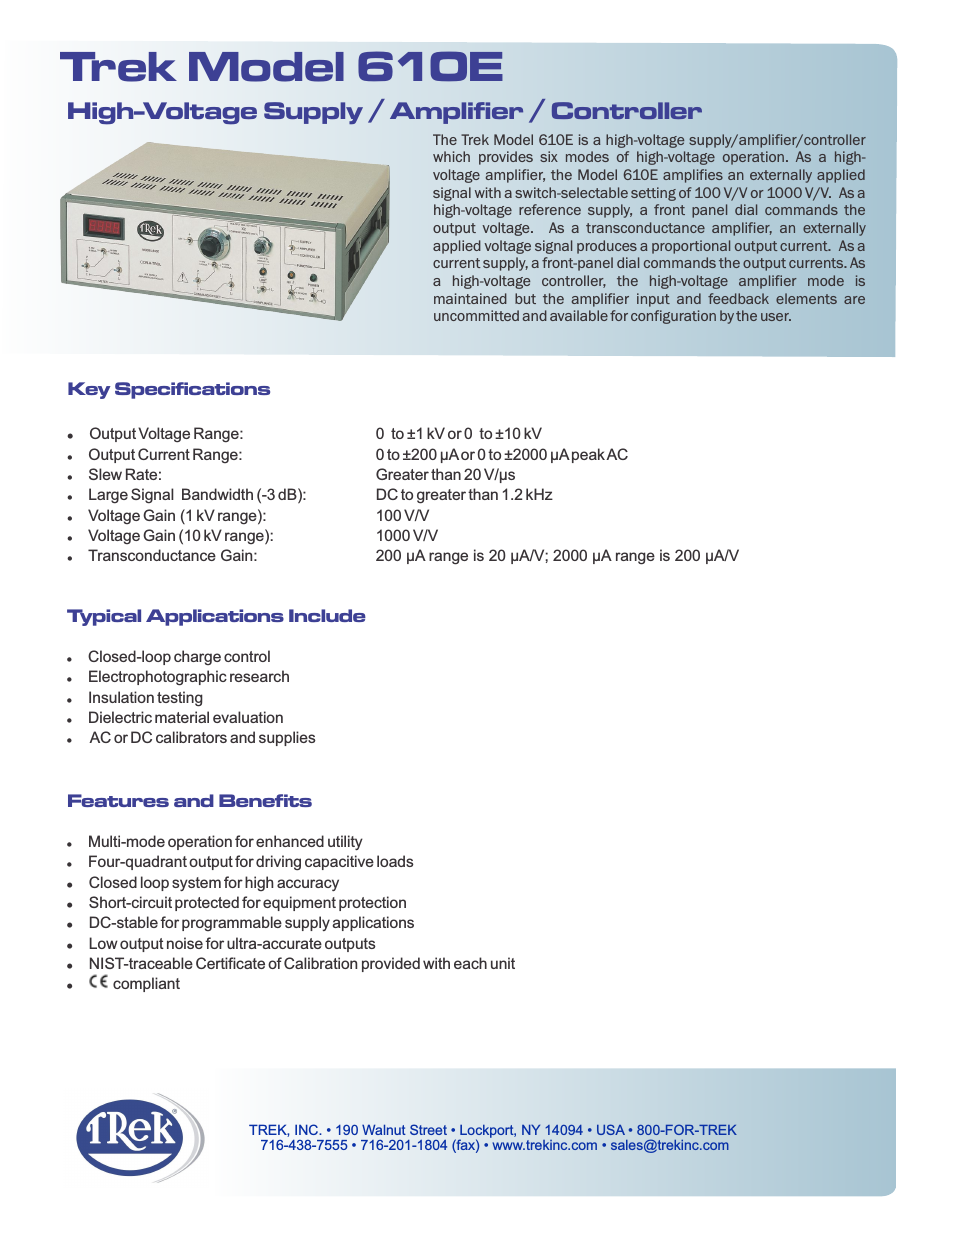 610E High-Voltage Power Amplifier